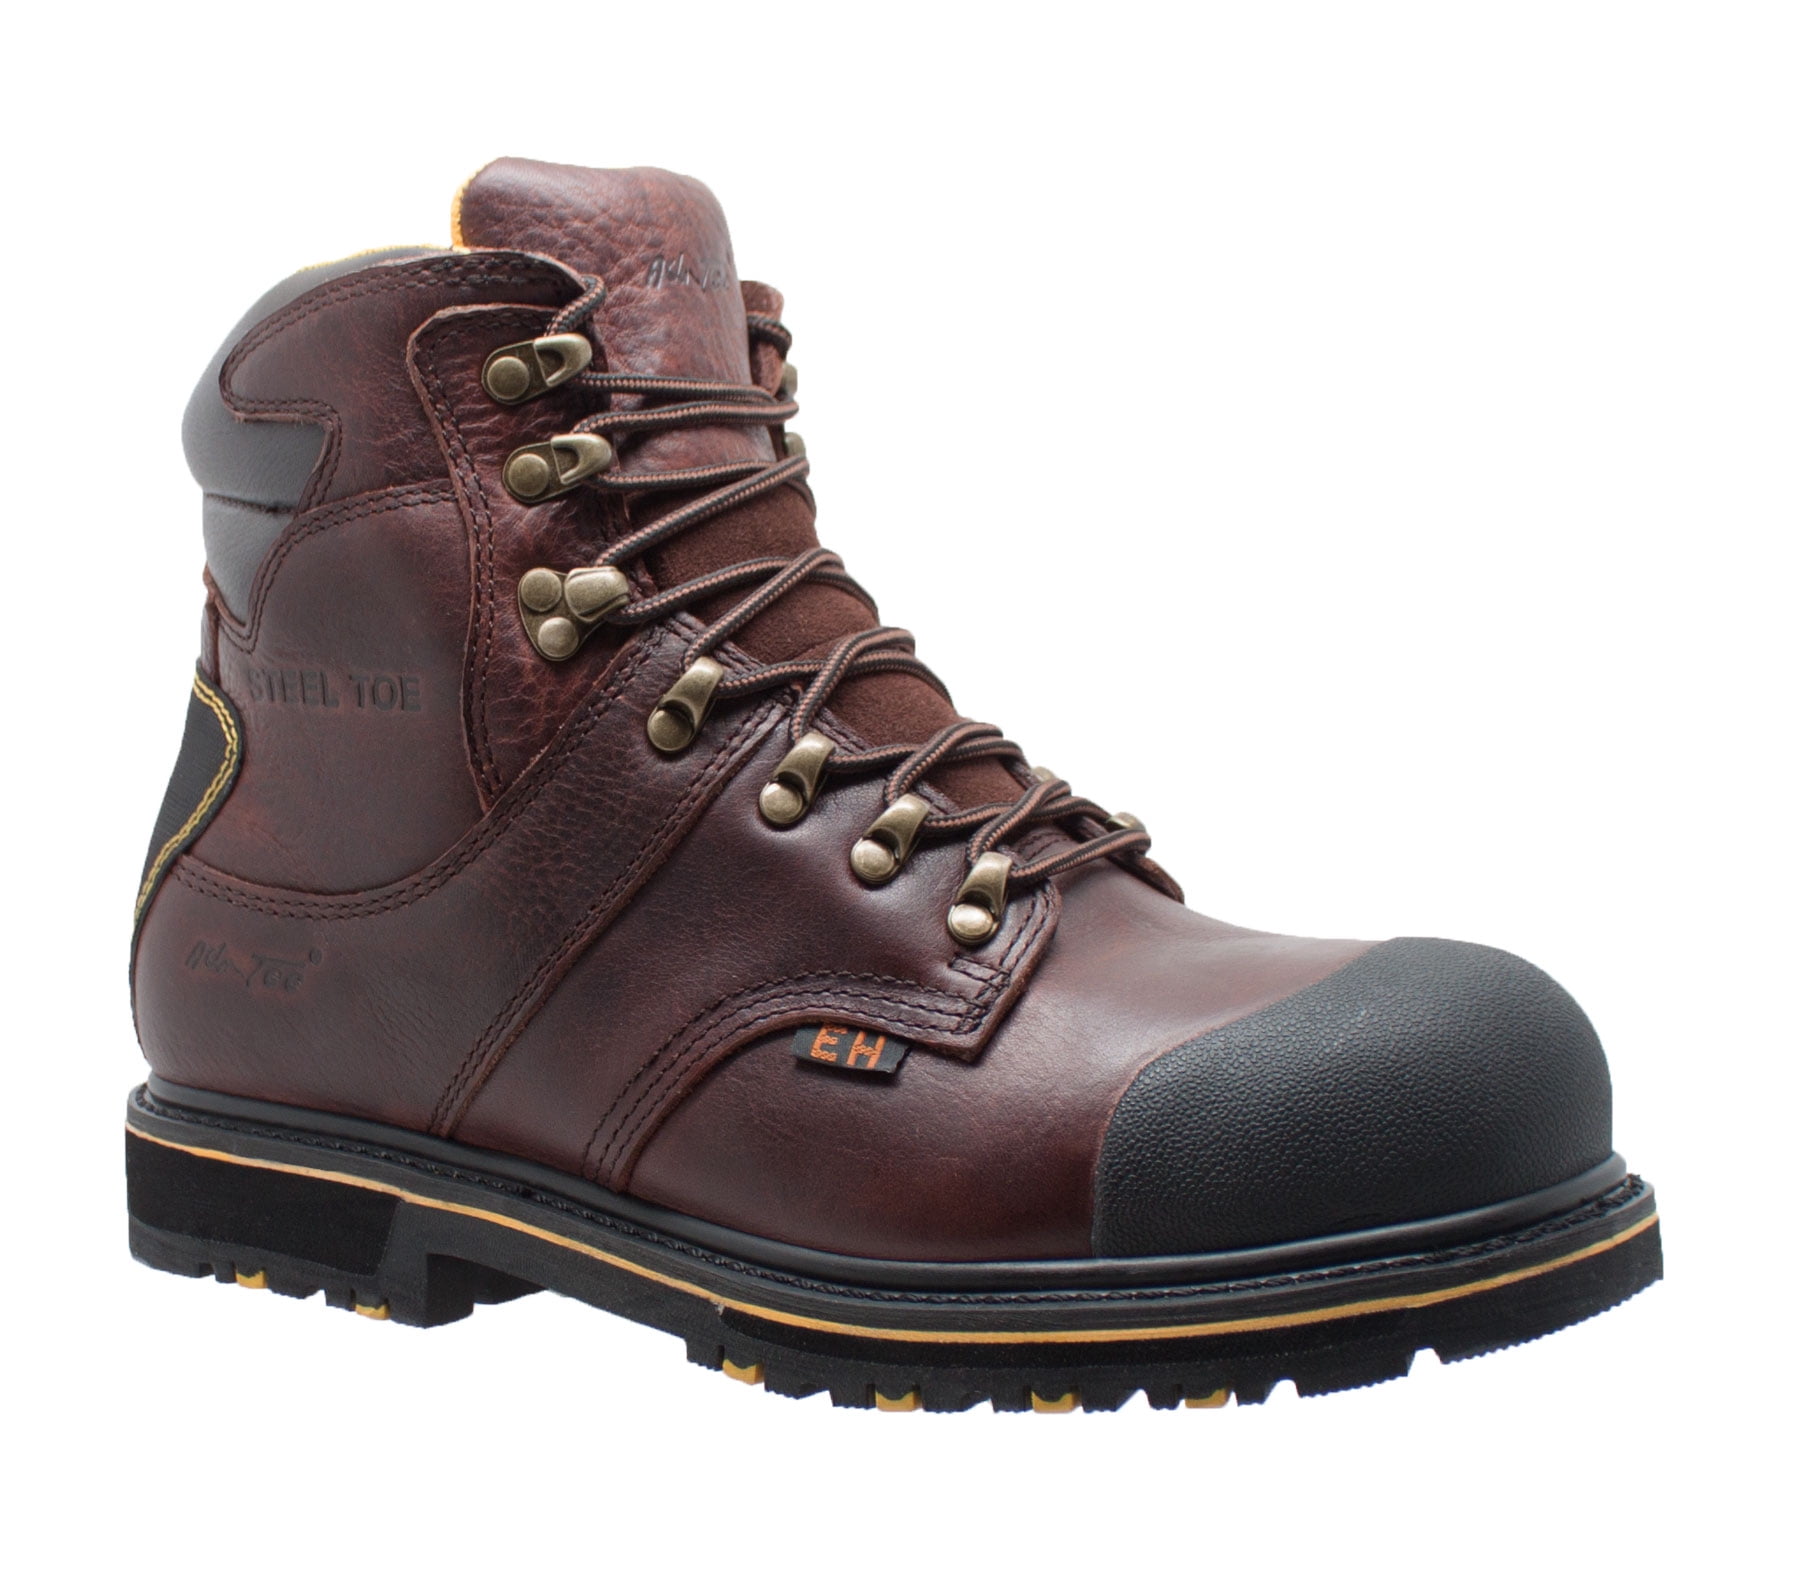 Men's Rocky Hauler Composite Toe Waterproof Work Boots RKK0128 